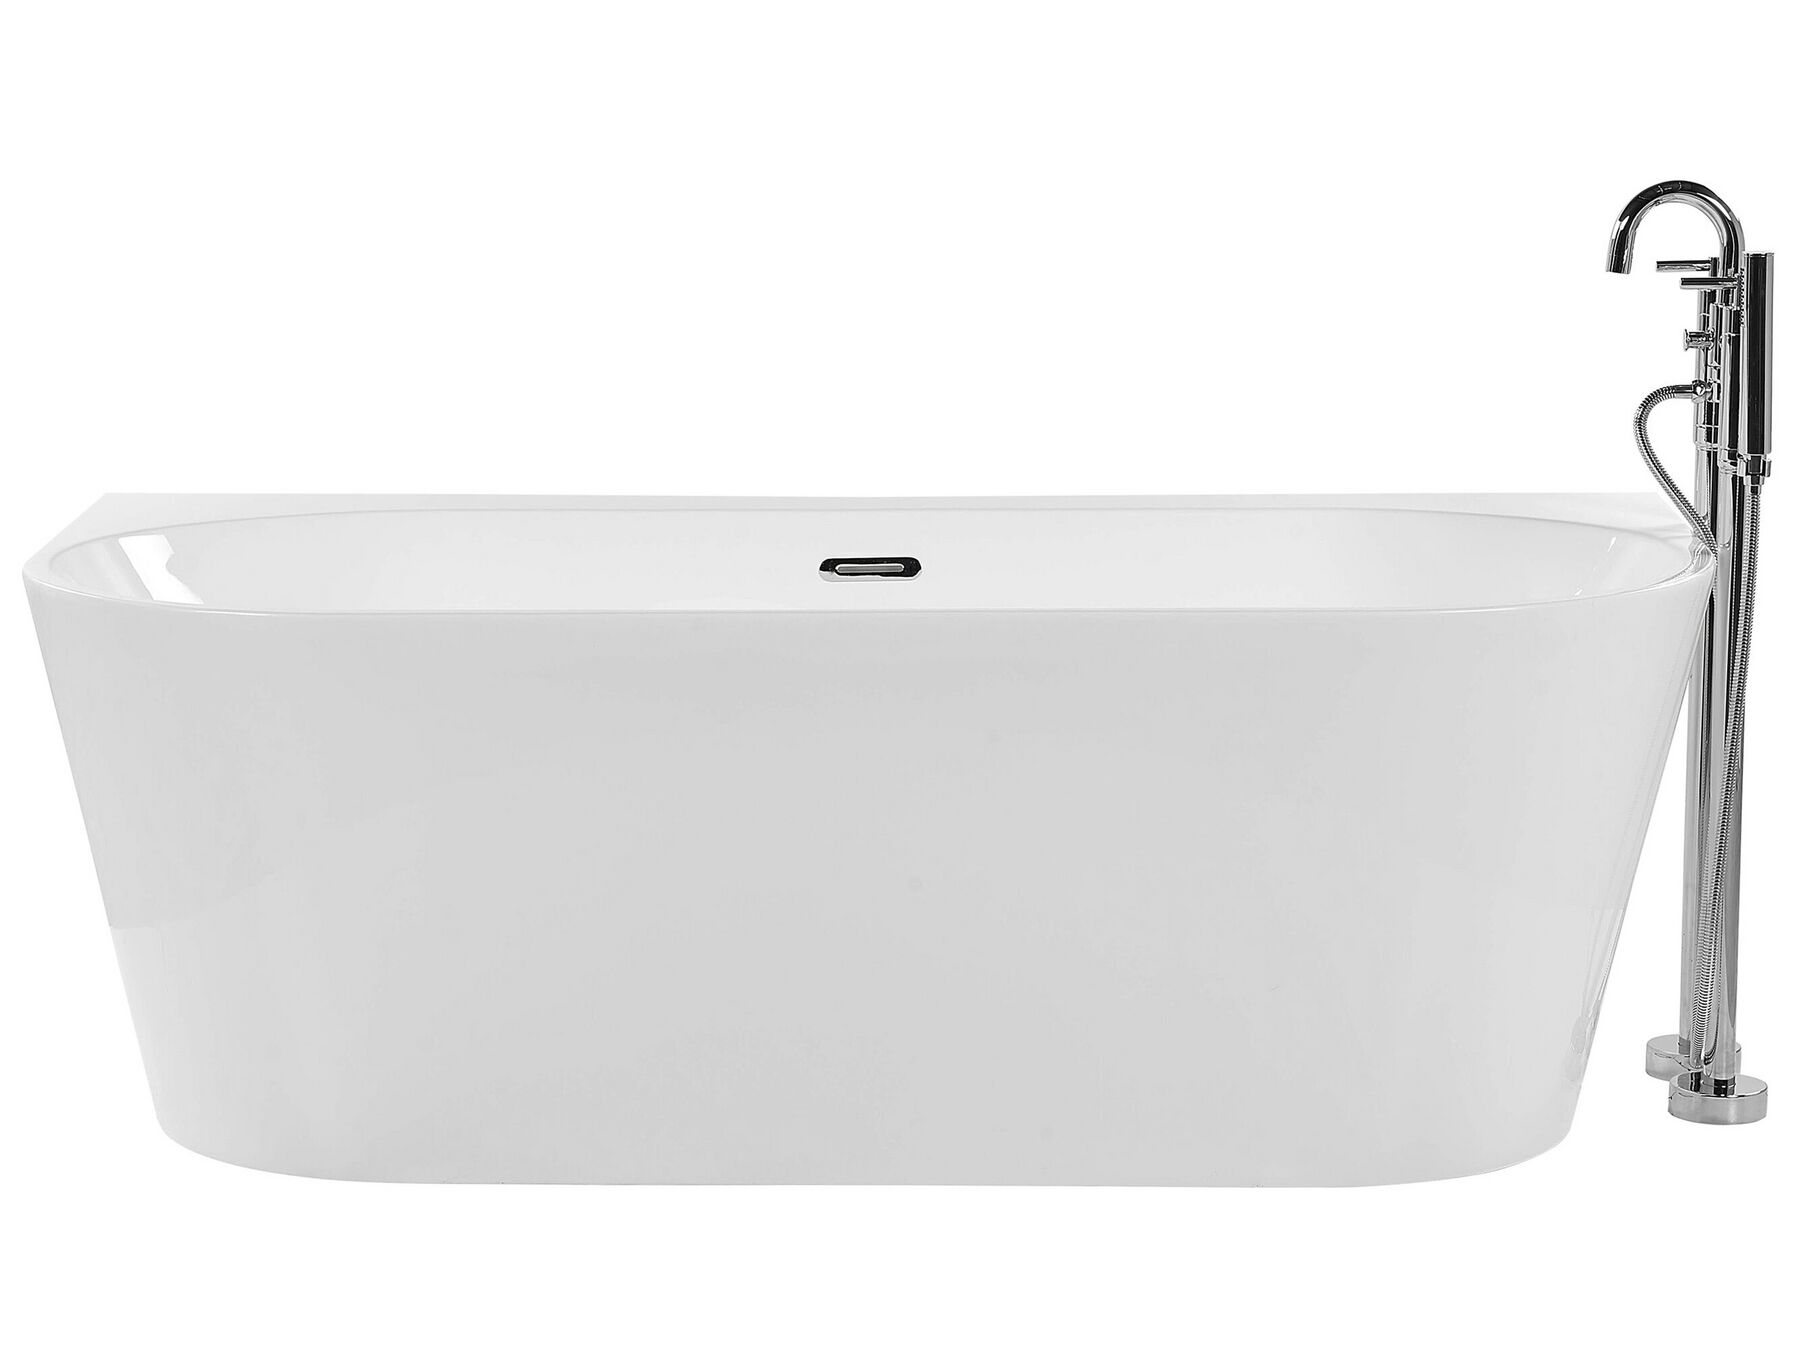 Badewanne weiß ovale Form 170 x 80 cm HARVEY_775619